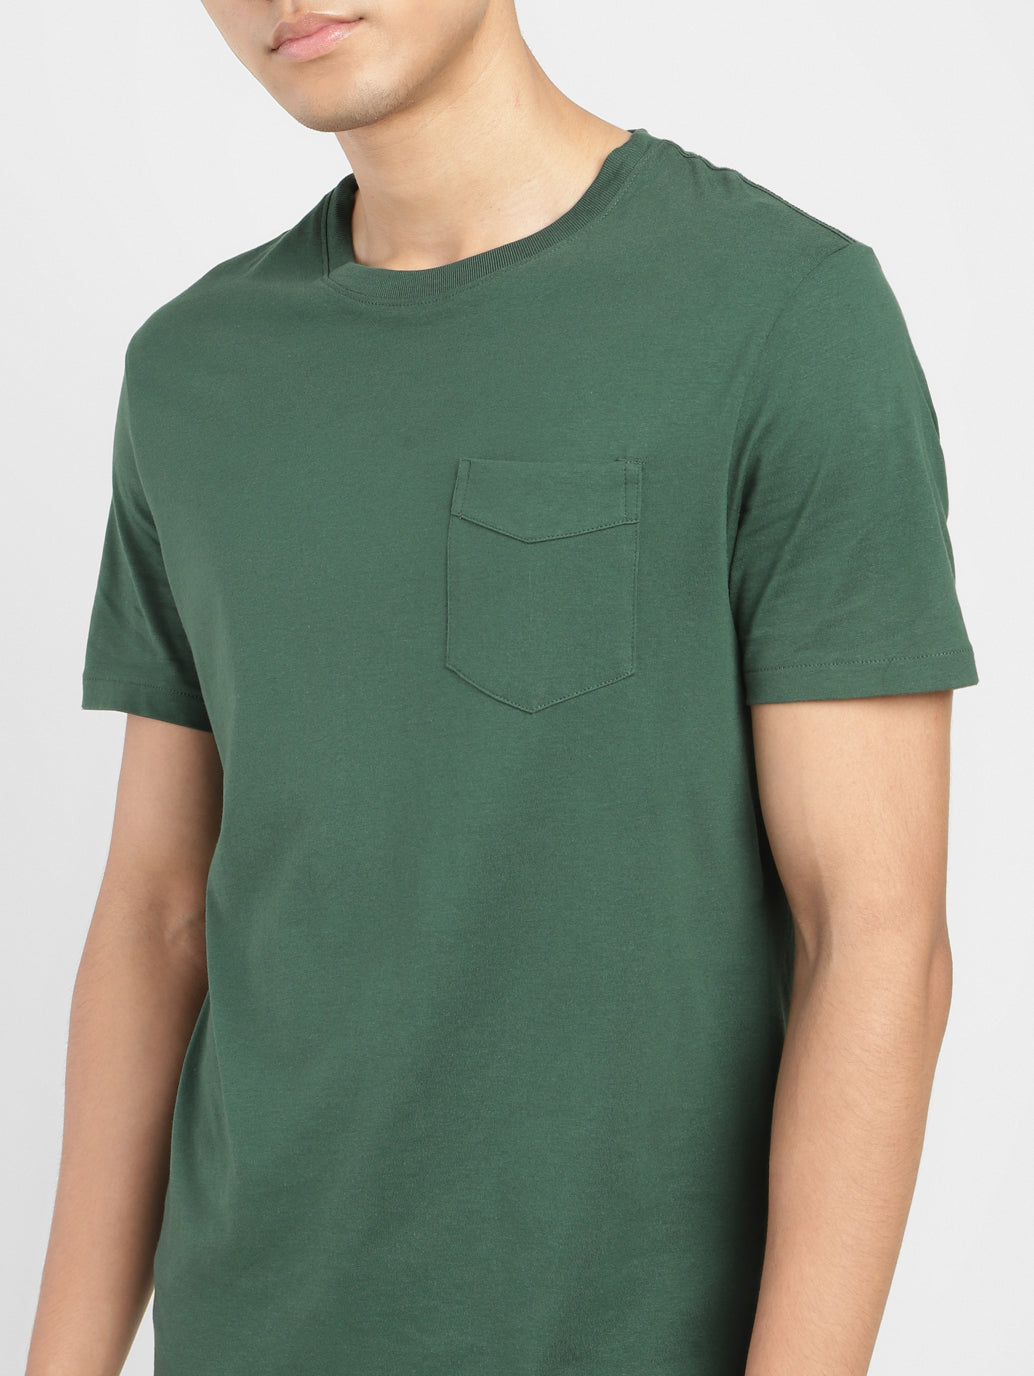 Men's Solid Crew Neck T-shirt